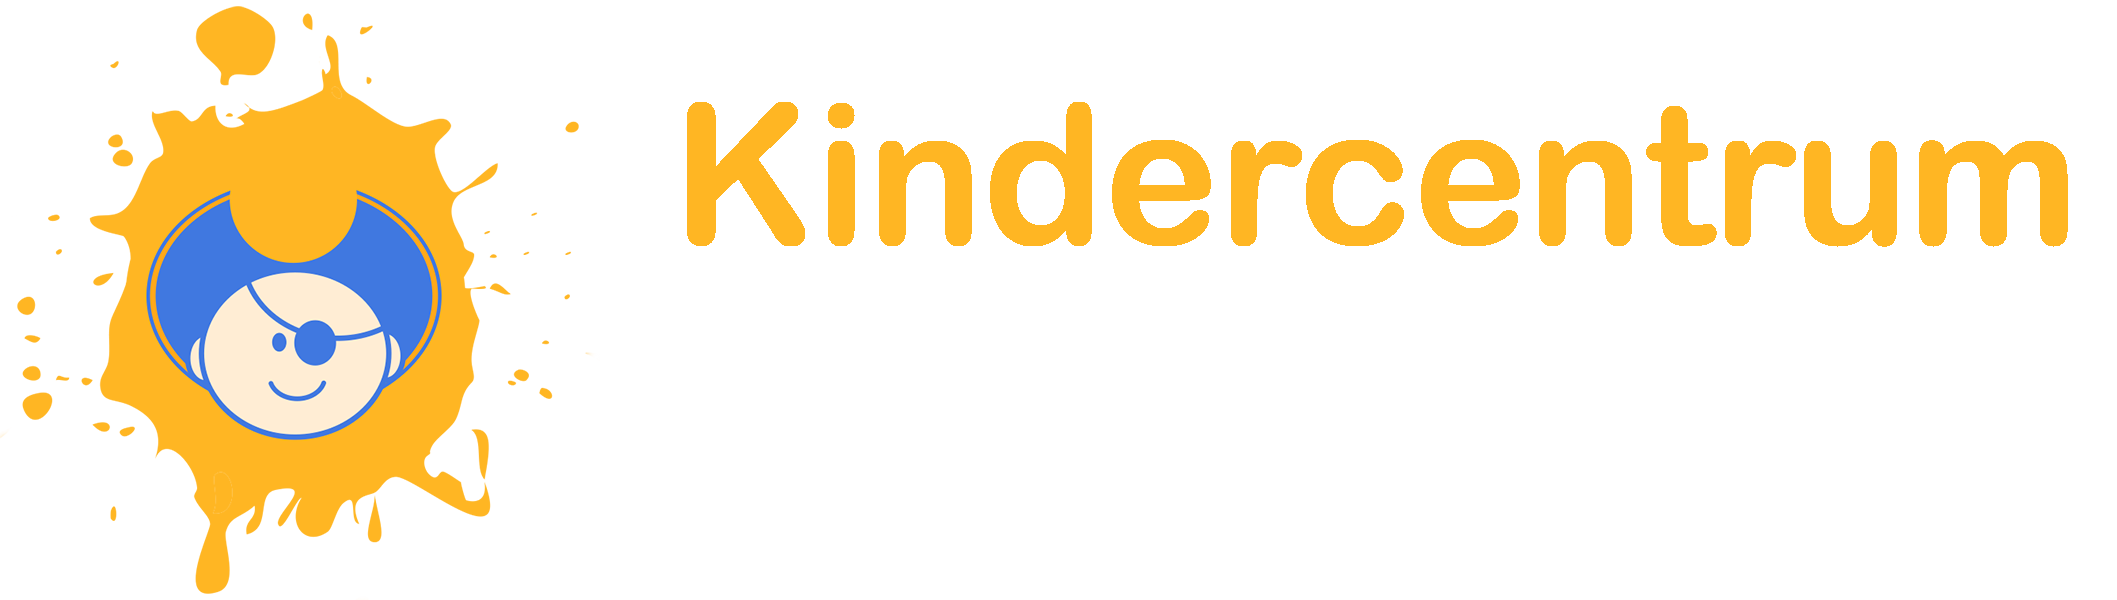 Kindercentrum_Schateiland_logo.png